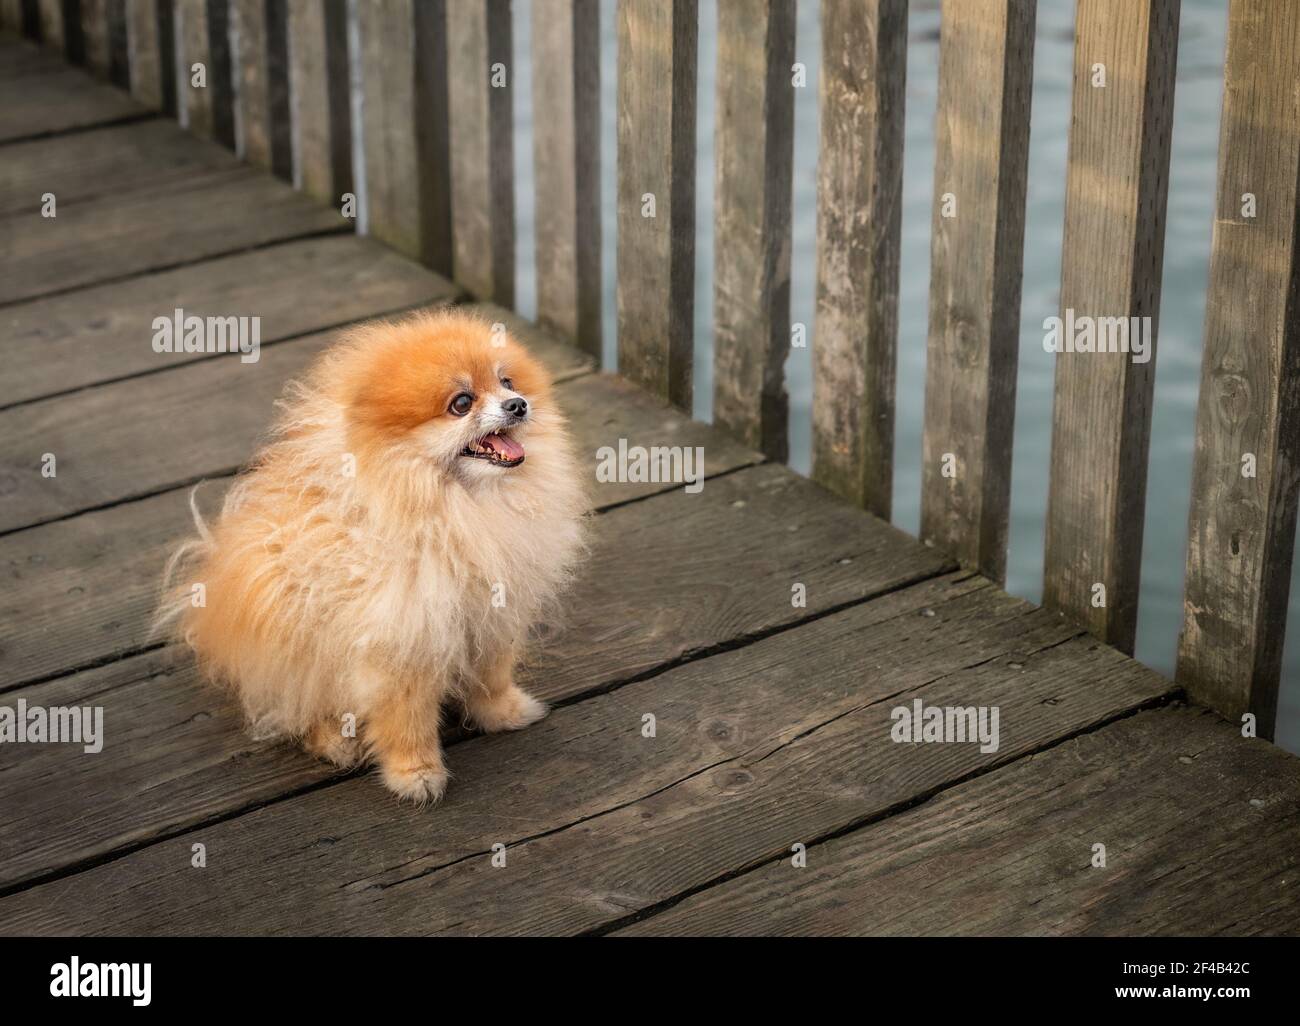 Pommersche Hund in der Notwendigkeit der Pflege oder Haarschnitt. Niedliche flauschige Spielzeug Hund mit fröhlichen Gesichtsausdruck sitzt auf einem hölzernen Gehweg. Das lange orangefarbene Fell ist braun Stockfoto